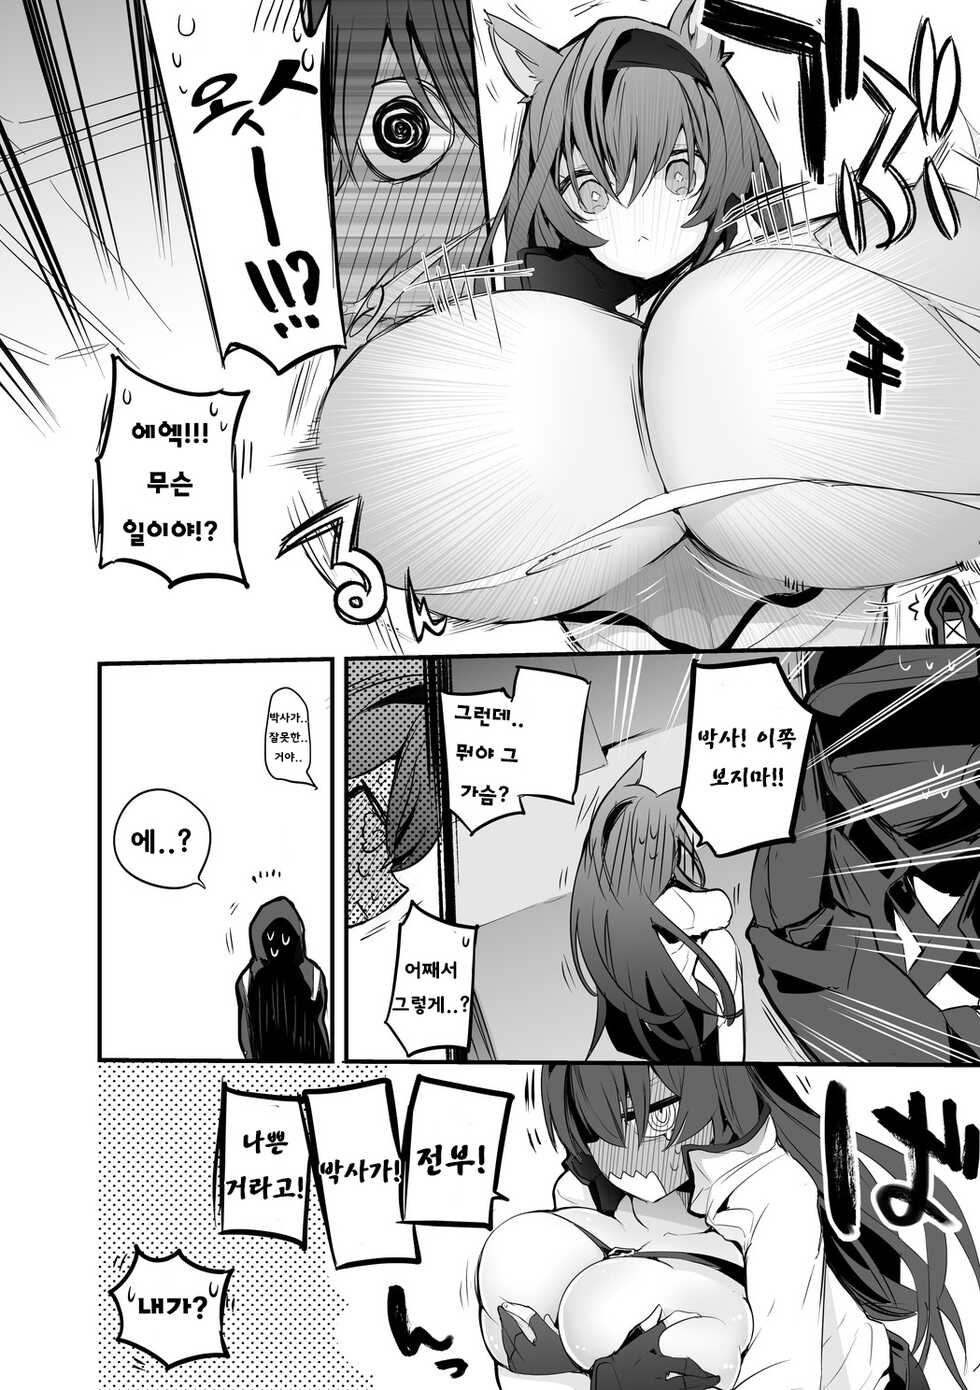 [りんごくらぶ] blaze with big breasts - Page 2